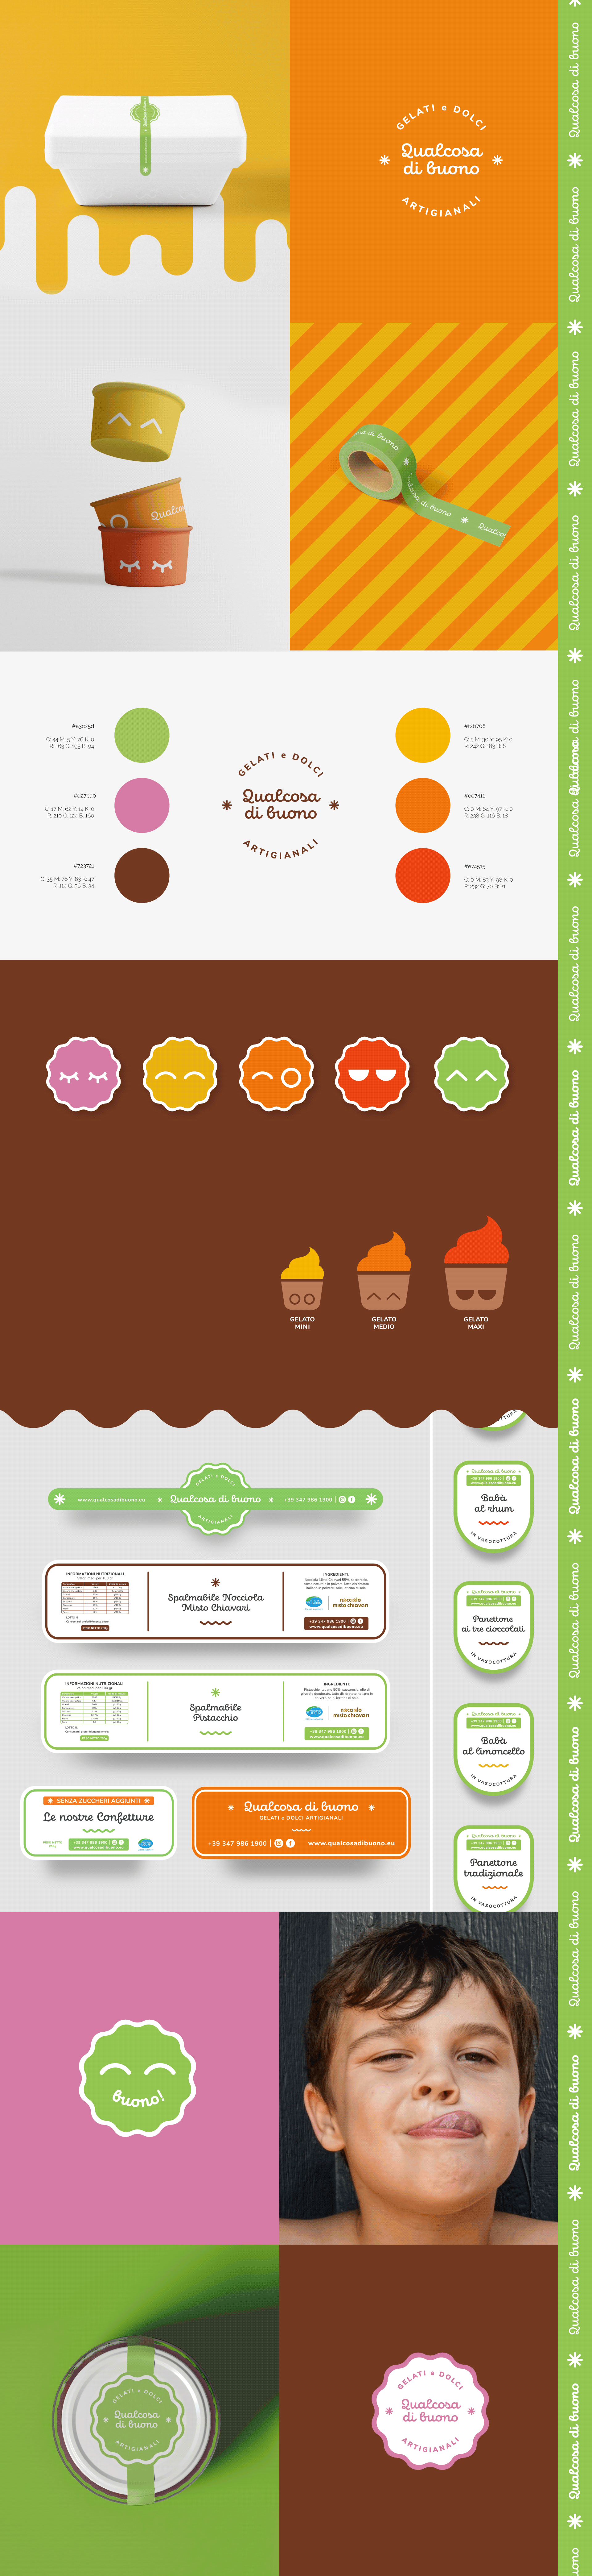 Qualcosa di buono thinkuplab gelateria pasticceria genova - logo design progettazione grafica sito web